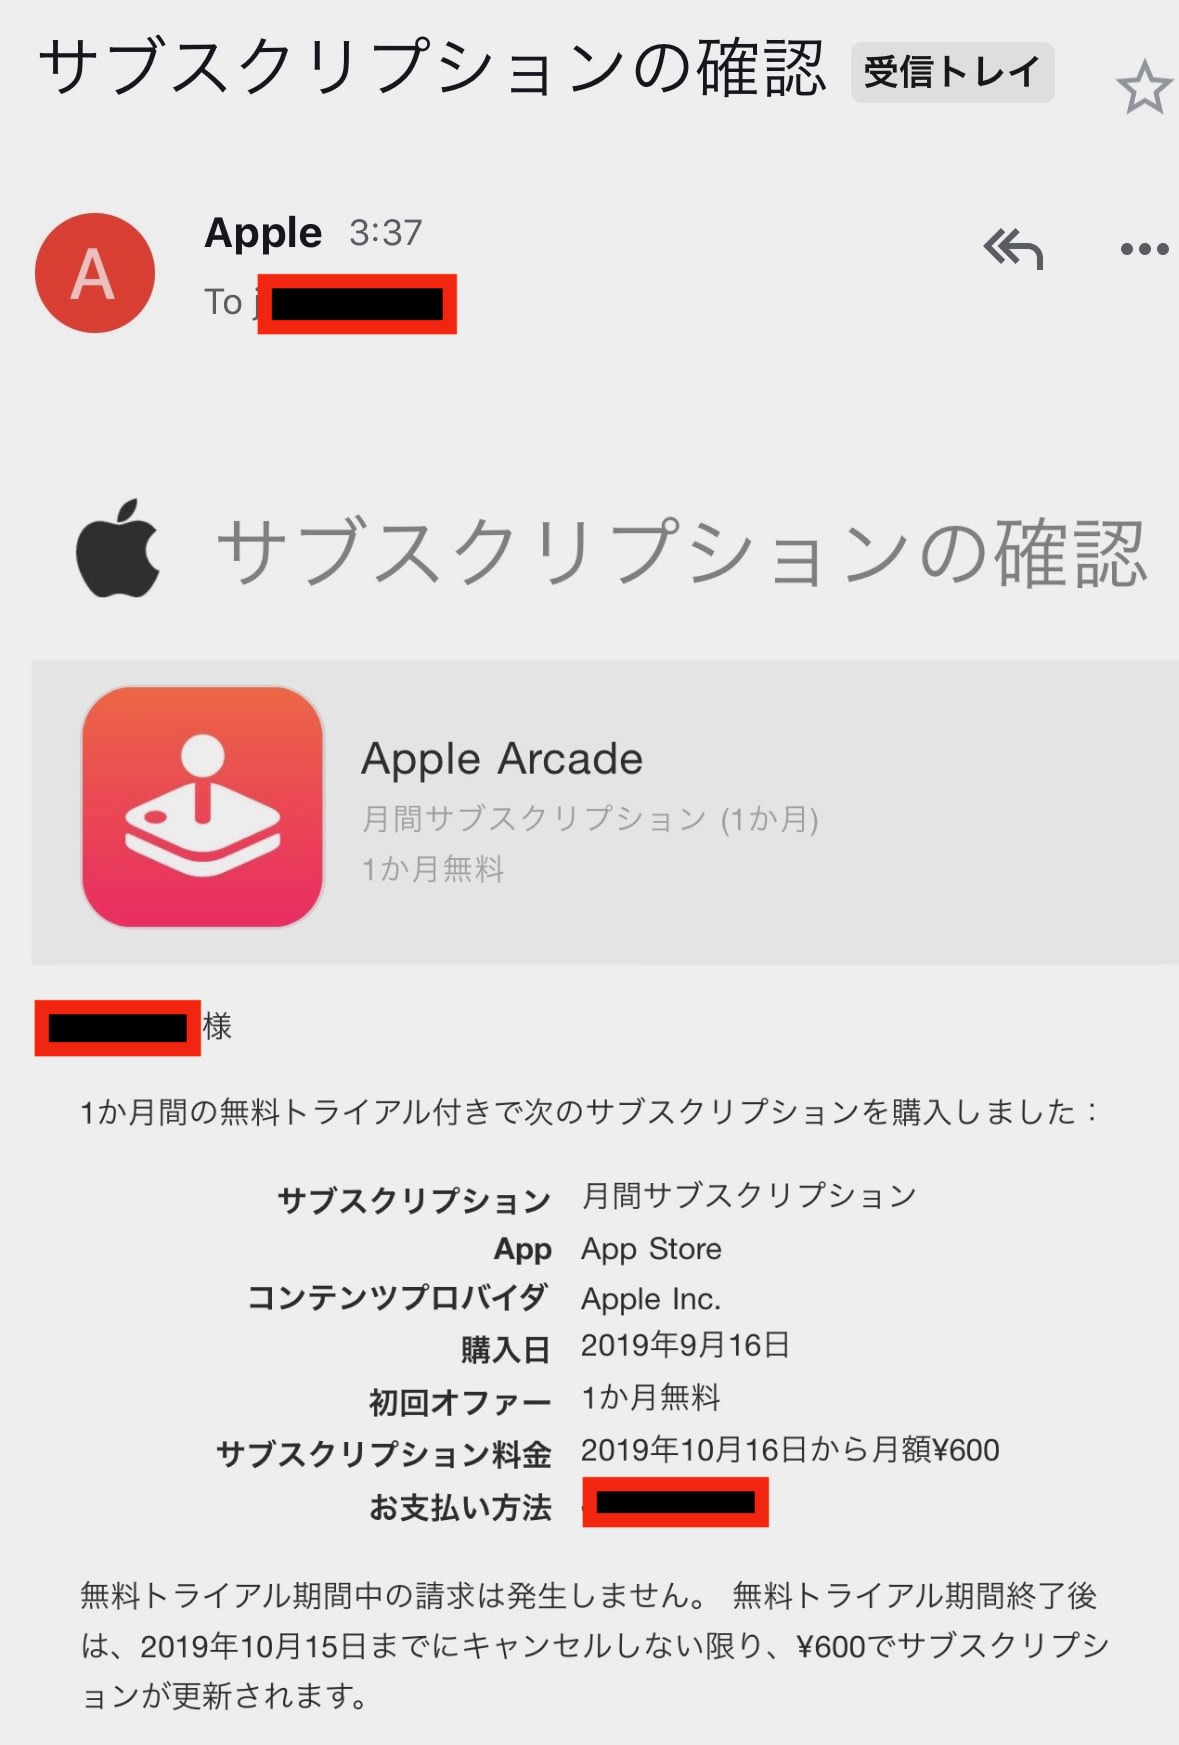 Apple Arcade 正式リリース前に遊べるユーザーも 50種類以上のゲームが1ヶ月無料 Engadget 日本版